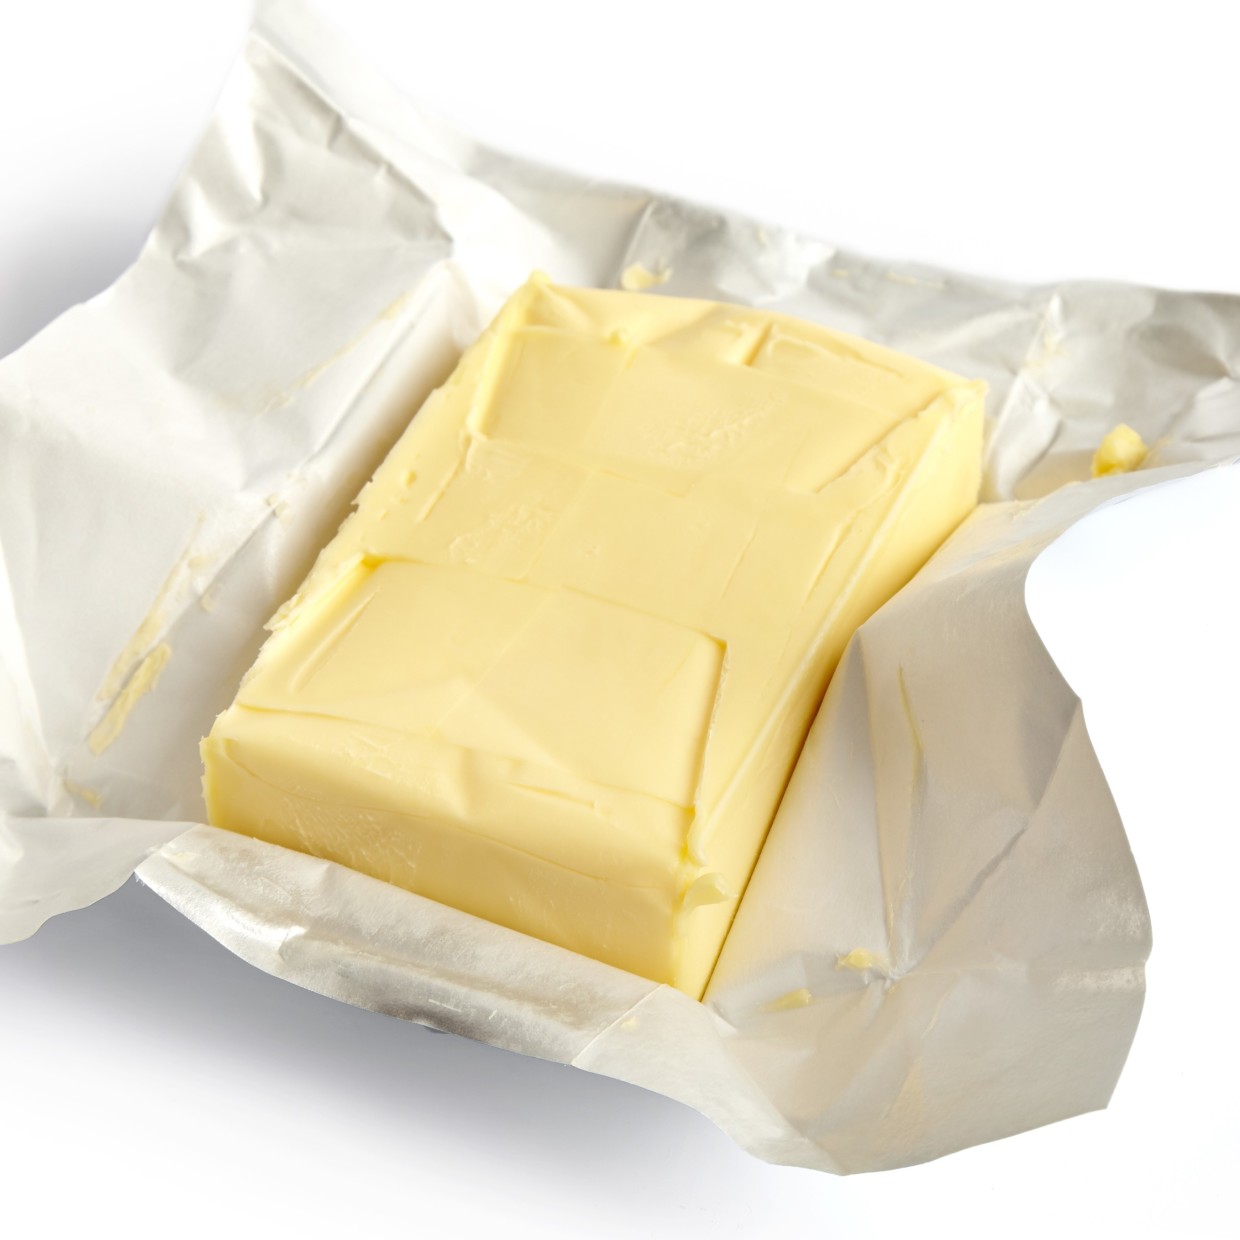  目からウロコ 「バター」の酸化しにくい保存法。“切る位置”が重要だった…！ 